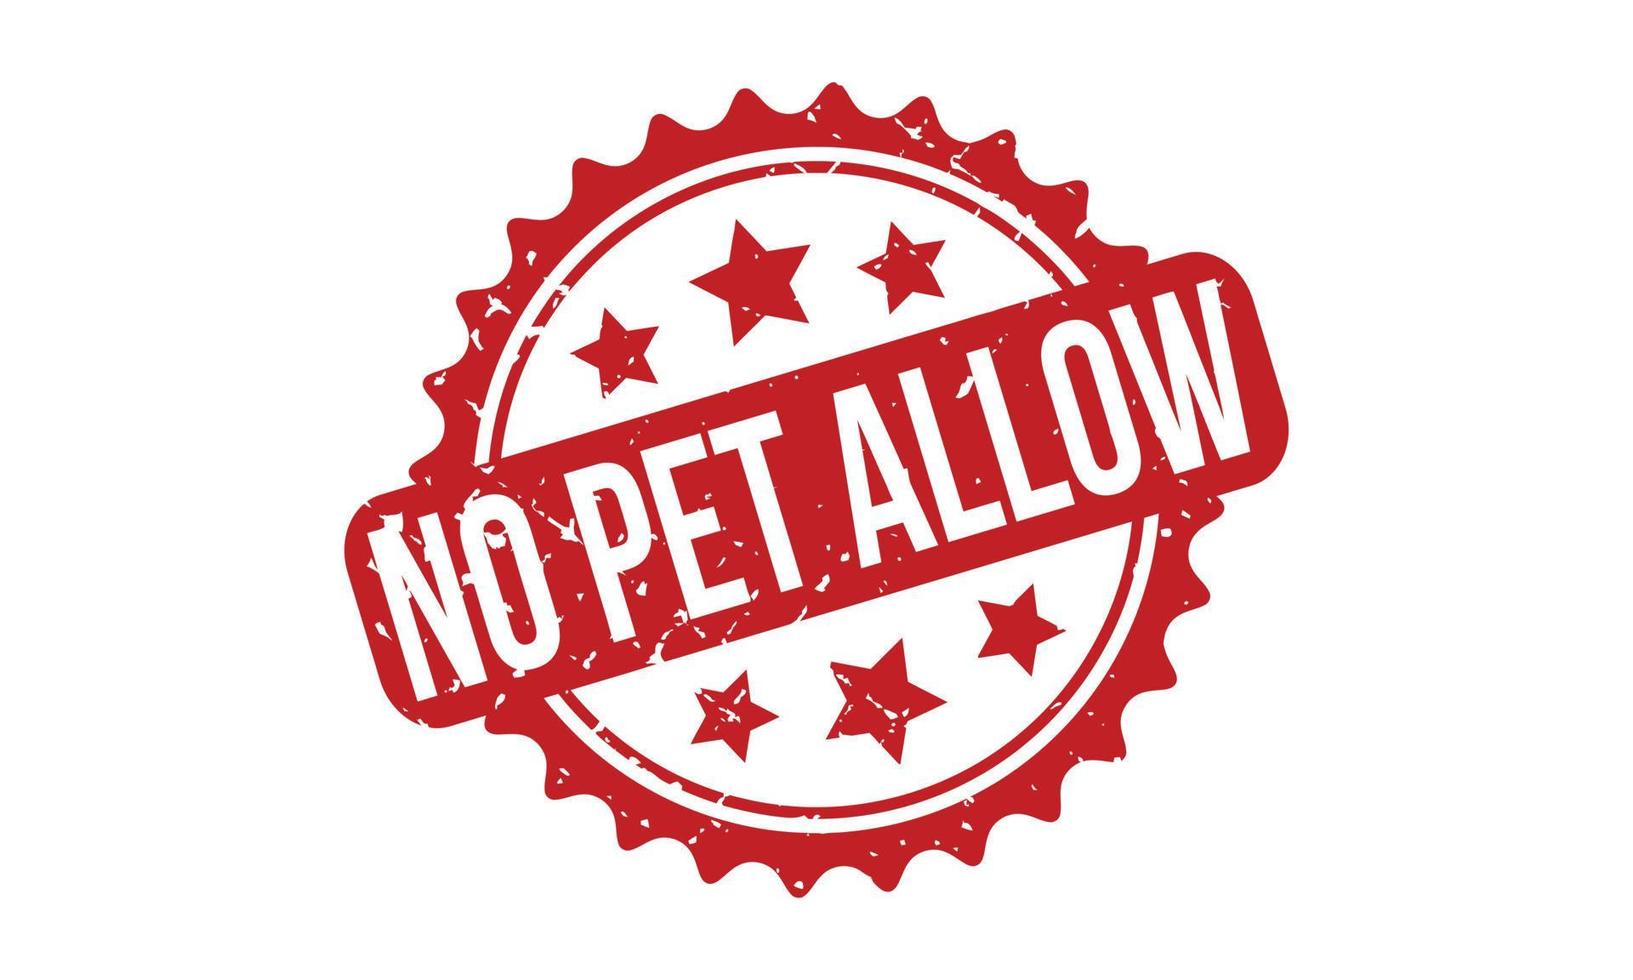 Nein Haustier ermöglichen Gummi Briefmarke. rot Nein Haustier ermöglichen Gummi Grunge Briefmarke Siegel Vektor Illustration